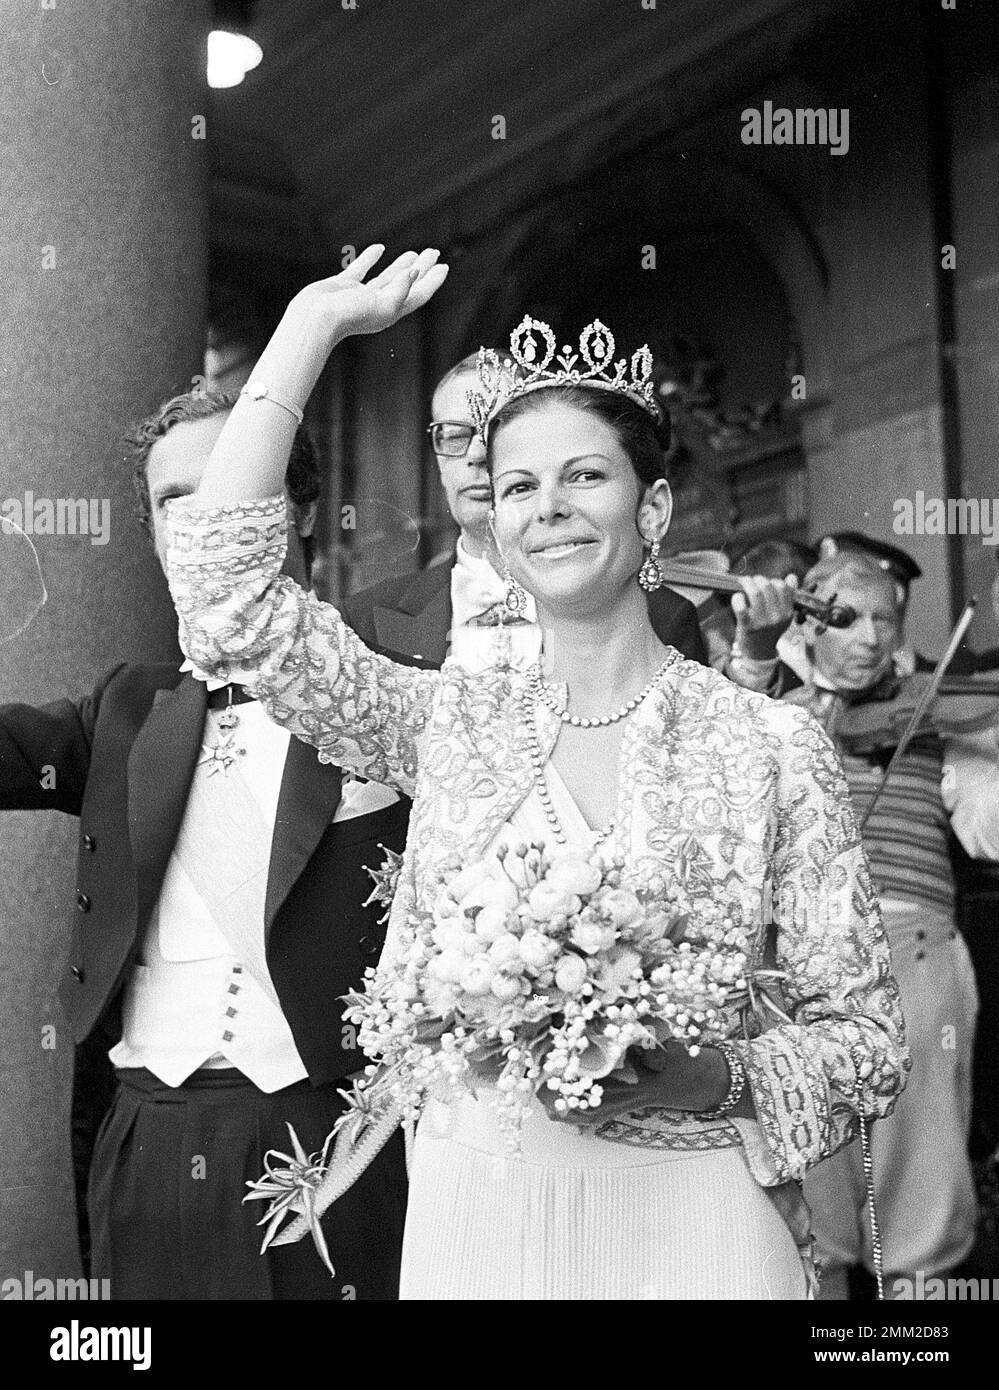 Mariage de Carl XVI Gustaf et Silvia Sommerlath. Carl XVI Gustaf, roi de Suède. Né le 30 avril 1946. Photo dans la soirée la veille de leur mariage lors d'un gala à l'opéra royal de Stockholm le 18 juin 1976. BV55-2 Banque D'Images